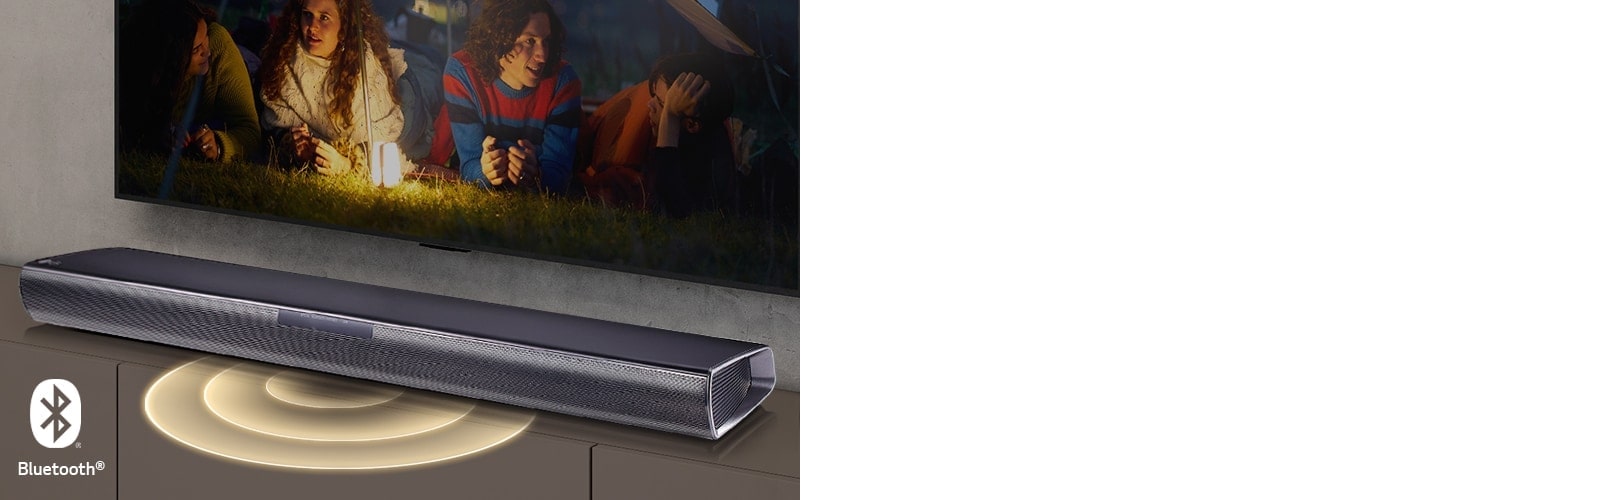 LG TV je na zidu, na ekranu se prikazuju 2 para koja leže na travi. Ispred njih se nalazi lampa. LG Soundbar zvučnik nalazi se ispod LG televizora. Grafika zvuka se pojavljuje iz prednjeg dela Soundbar zvučnika. Logotip Bluetooth prikazan je u donjem levom uglu slike.